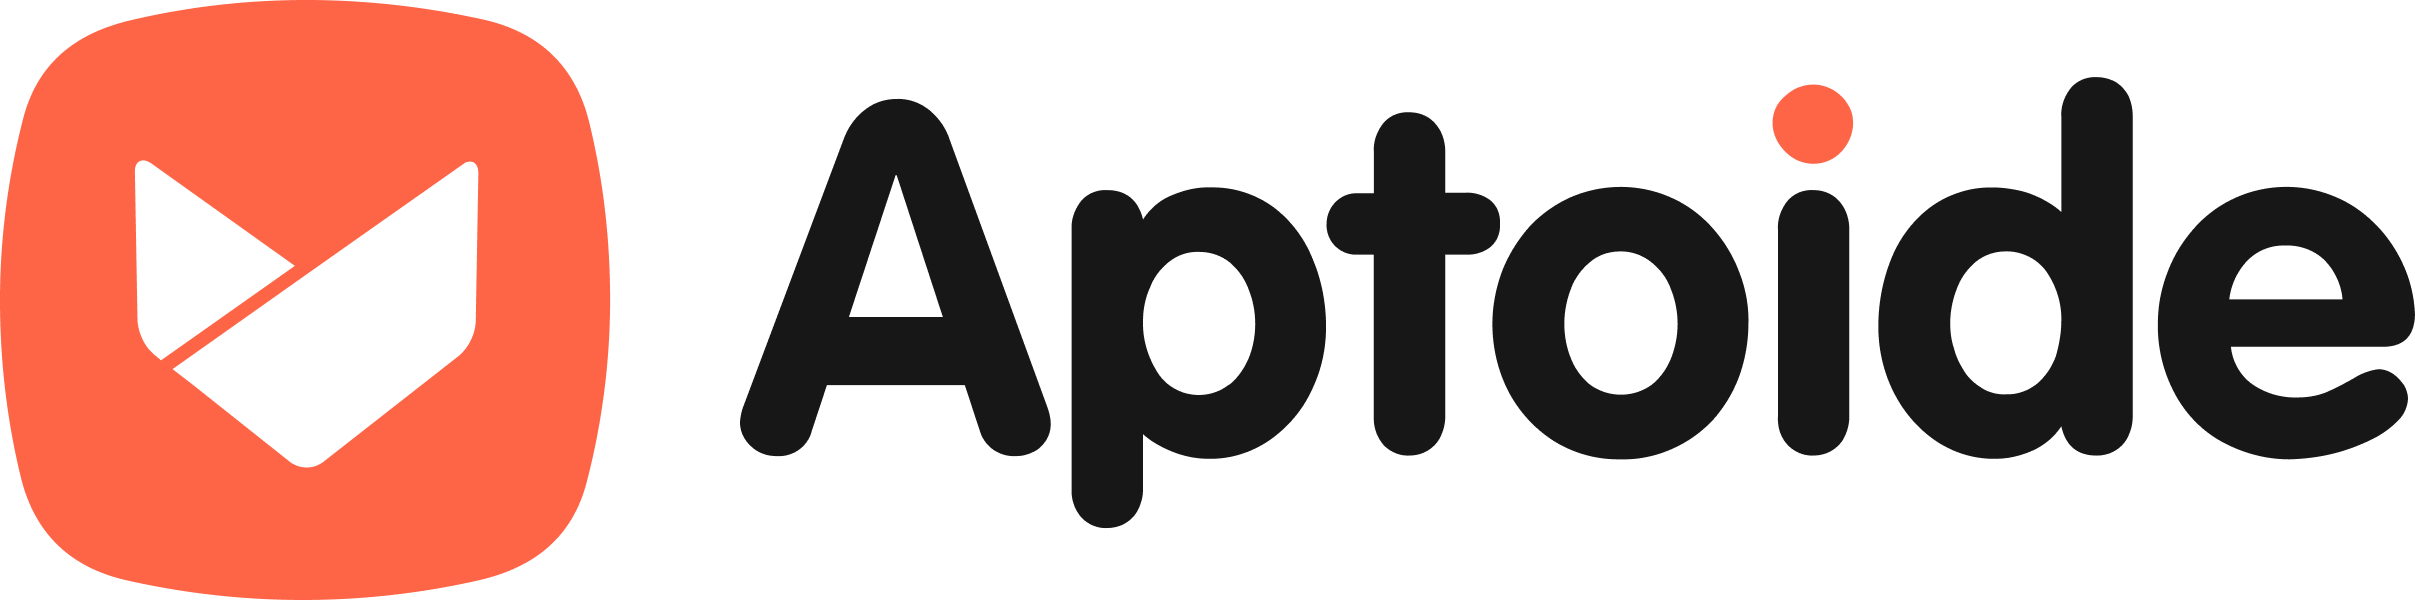 Aptoide_Logo